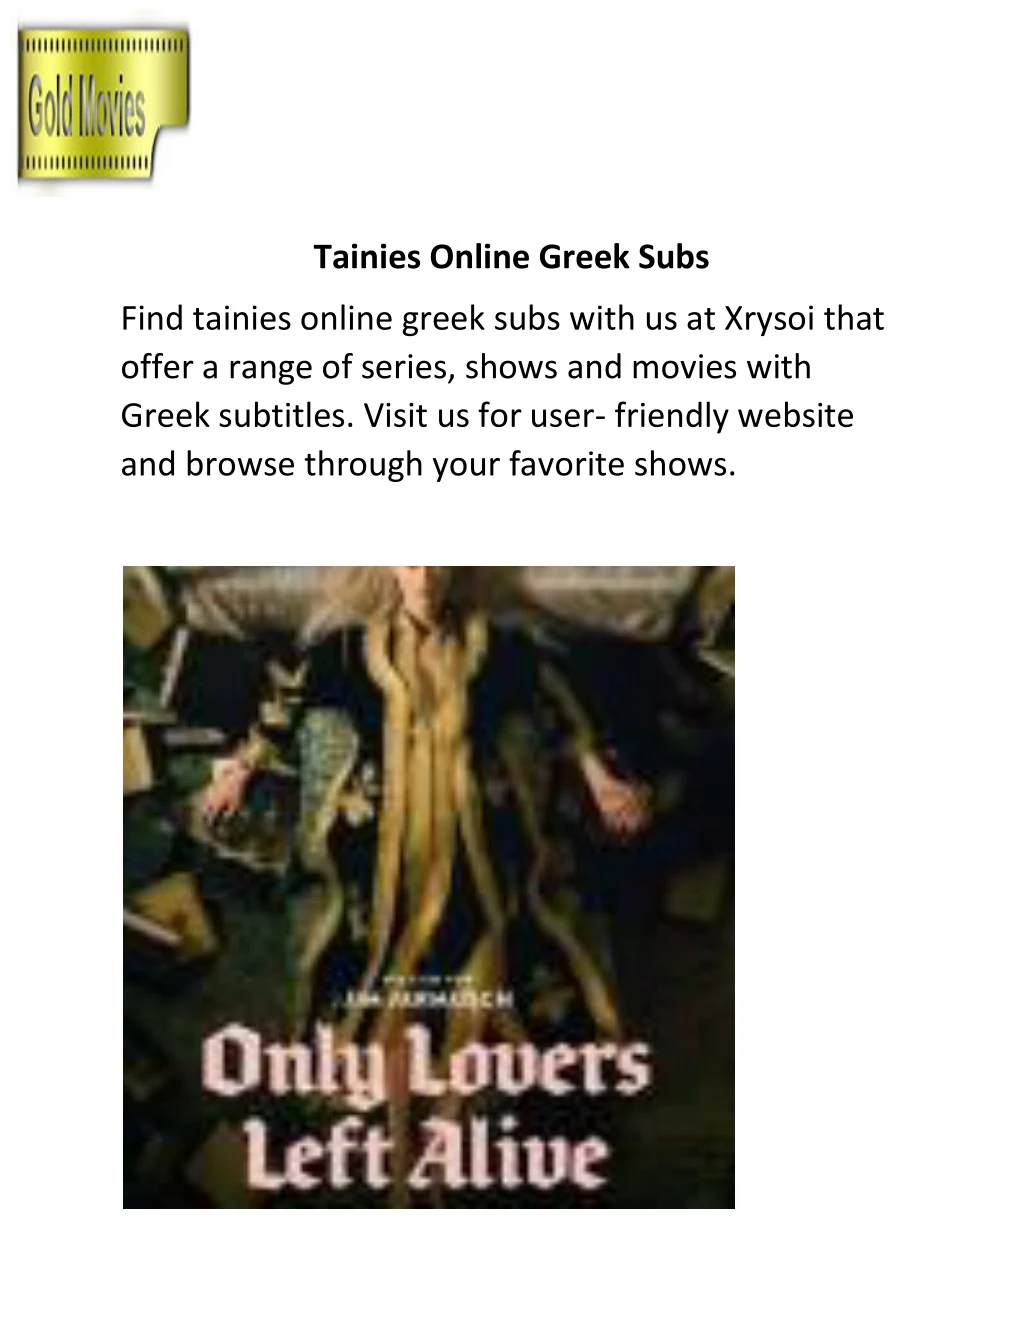 tainies online greek subs